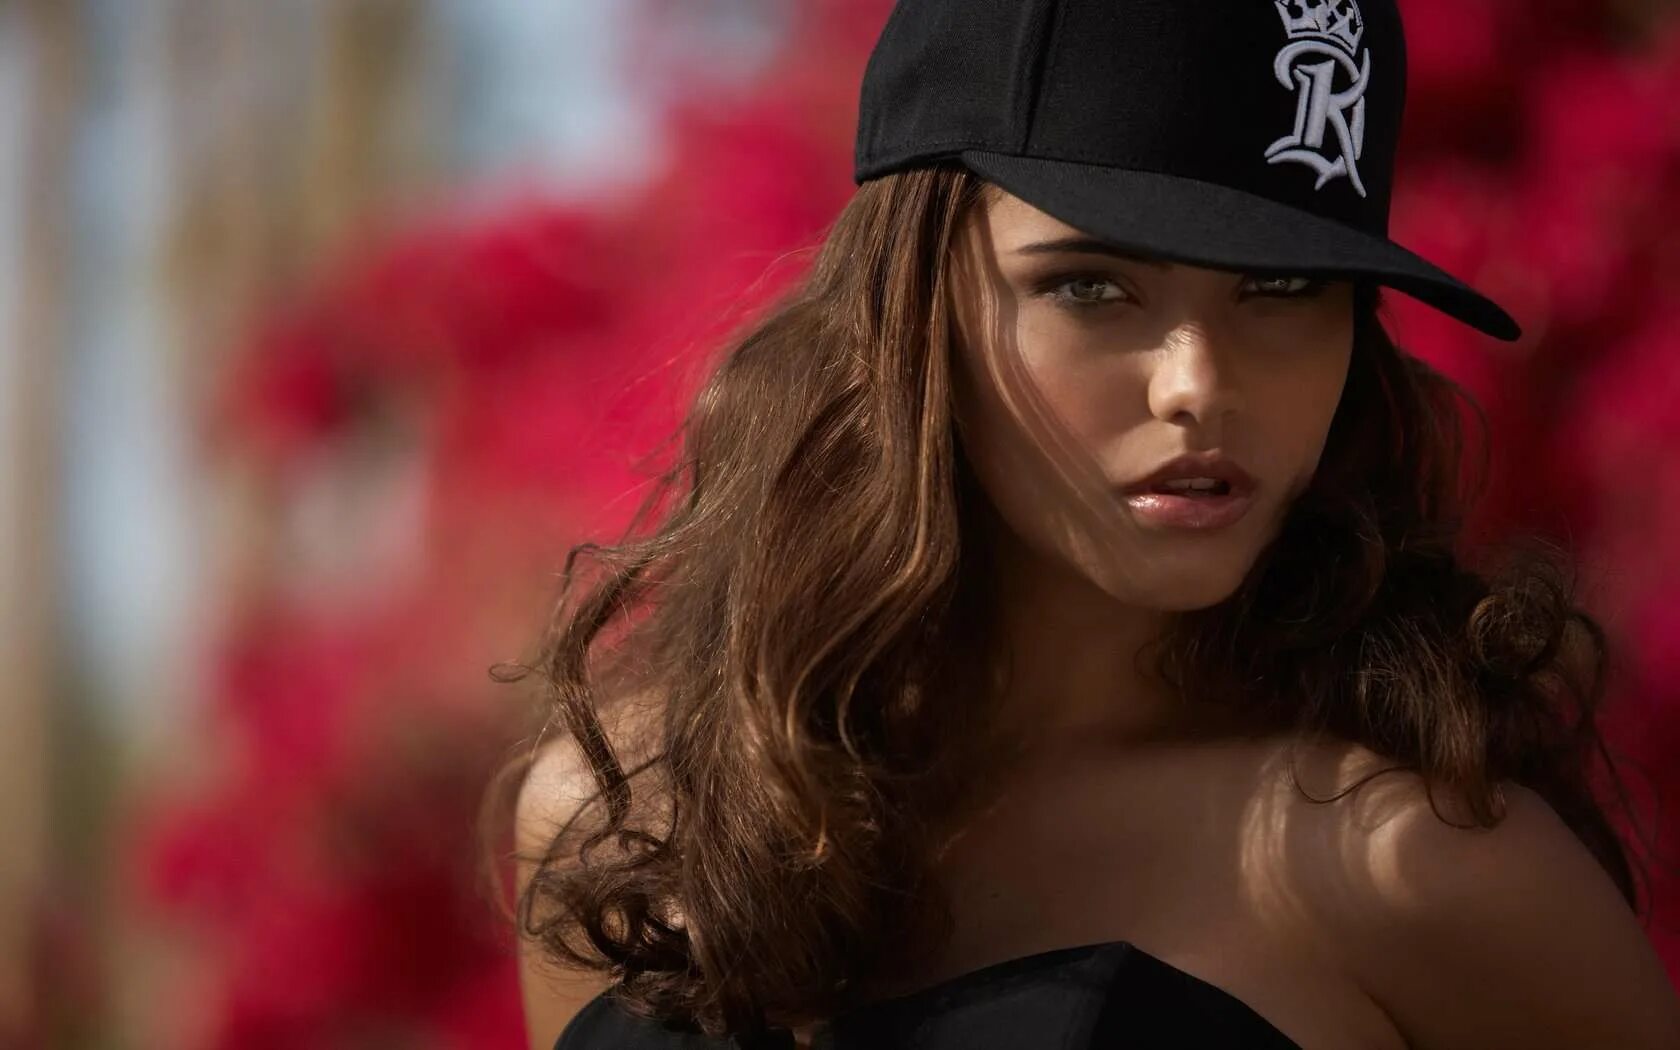 Nataniele Ribiero модель. Девушка в бейсболке. Красивая девушка в кепке. Обложки для вк для девушек